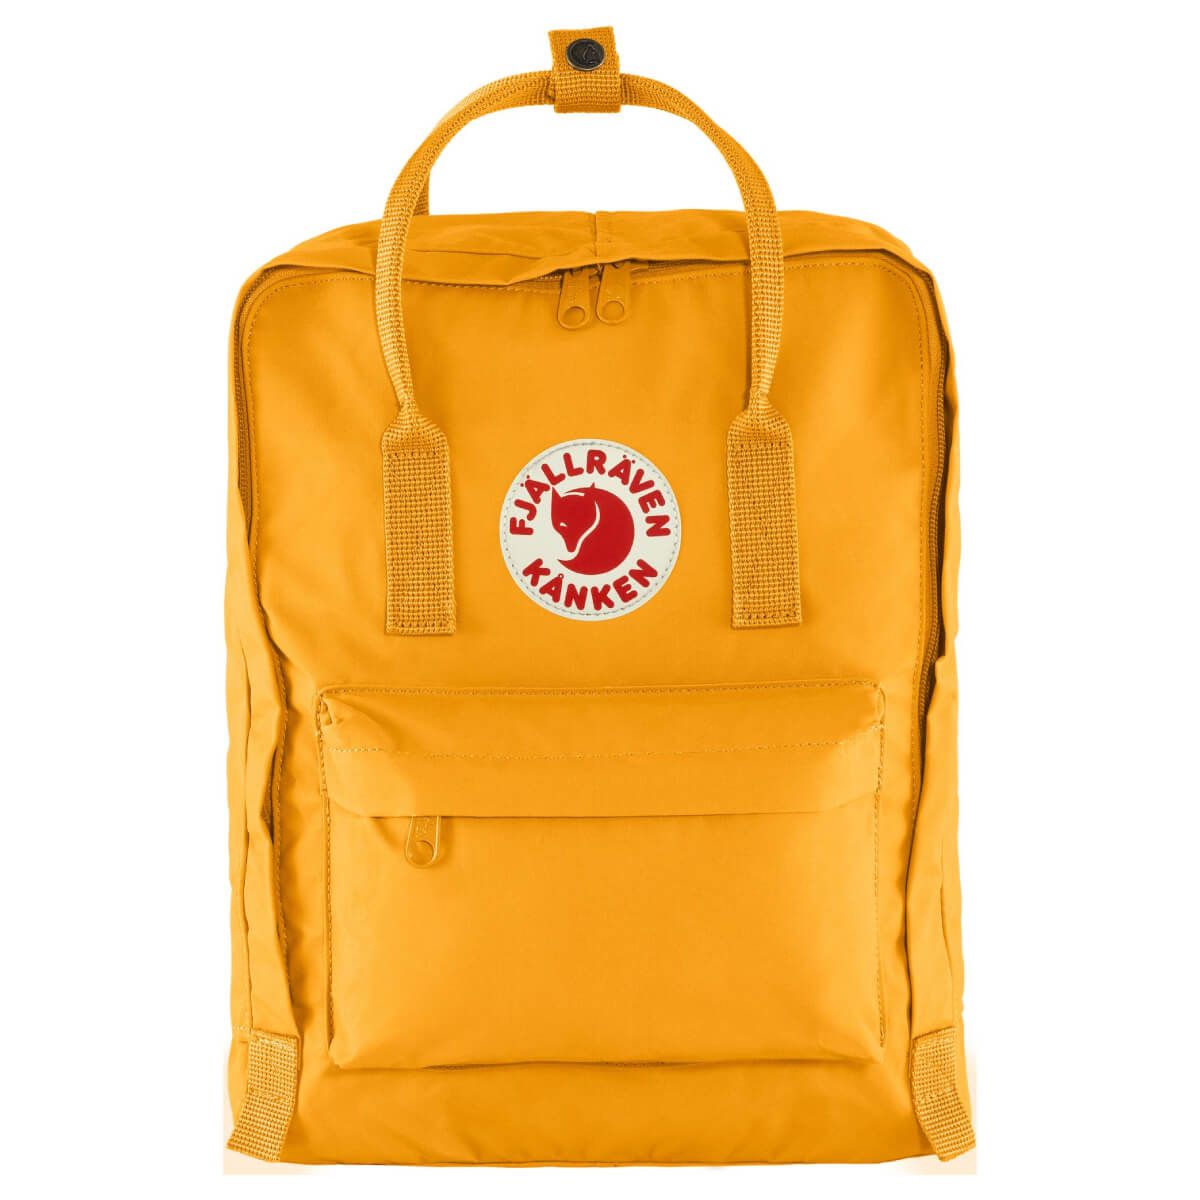 Міський рюкзак Fjallraven Kanken Warm Yellow 16 л 23510.141